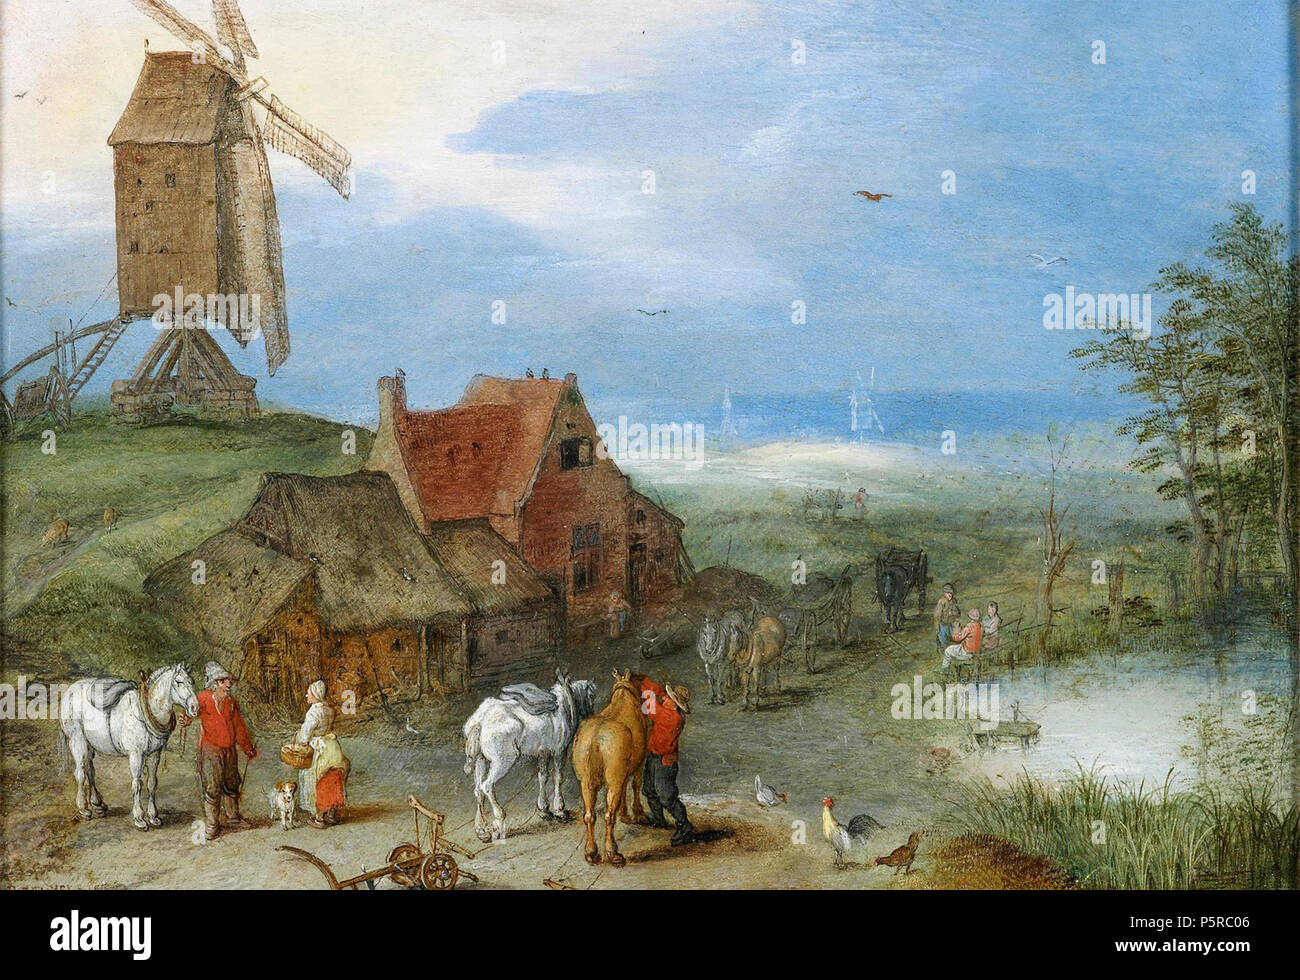 N/A. Englisch: Landschaft mit einer Windmühle, die Zahlen und die Pferde von einem Bauernhof von Jan Brueghel der Ältere, 1606, Öl auf Kupfer, 4 5/8 x 6 5/8 in. (11,8 x 16,7 cm.). 1606. Jan Brueghel der Ältere 243 Landschaft mit einer Windmühle, die Zahlen und die Pferde von einem Bauernhof von Jan Brueghel der Ältere Stockfoto